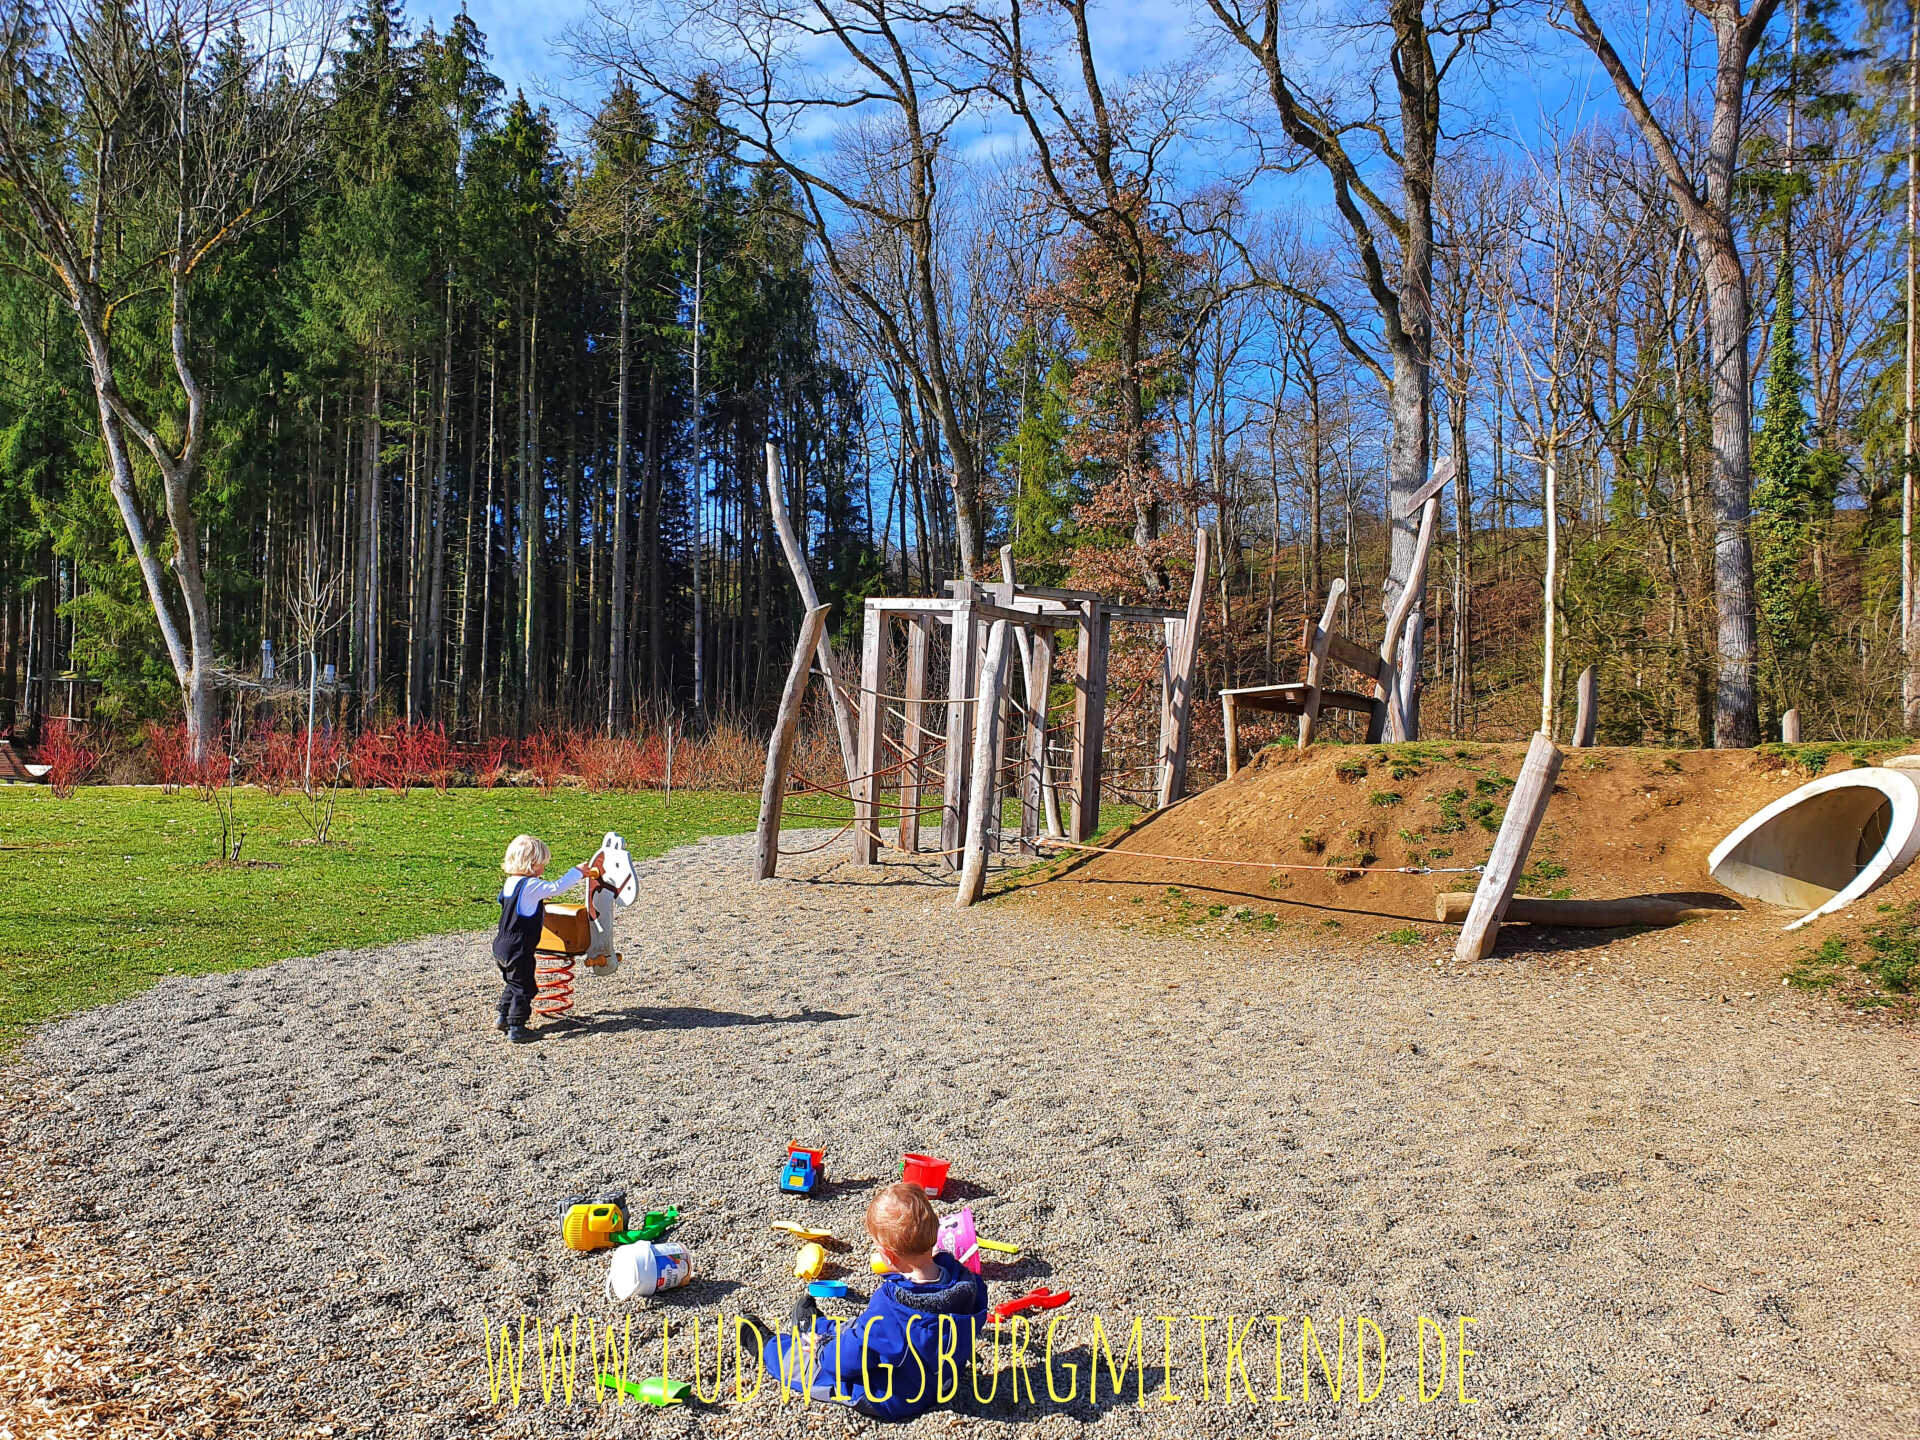 Böbingen Stadtpark, Walderlebnispfad, Ausflugsziel Familien mit Kugelbahn und Spielplatz